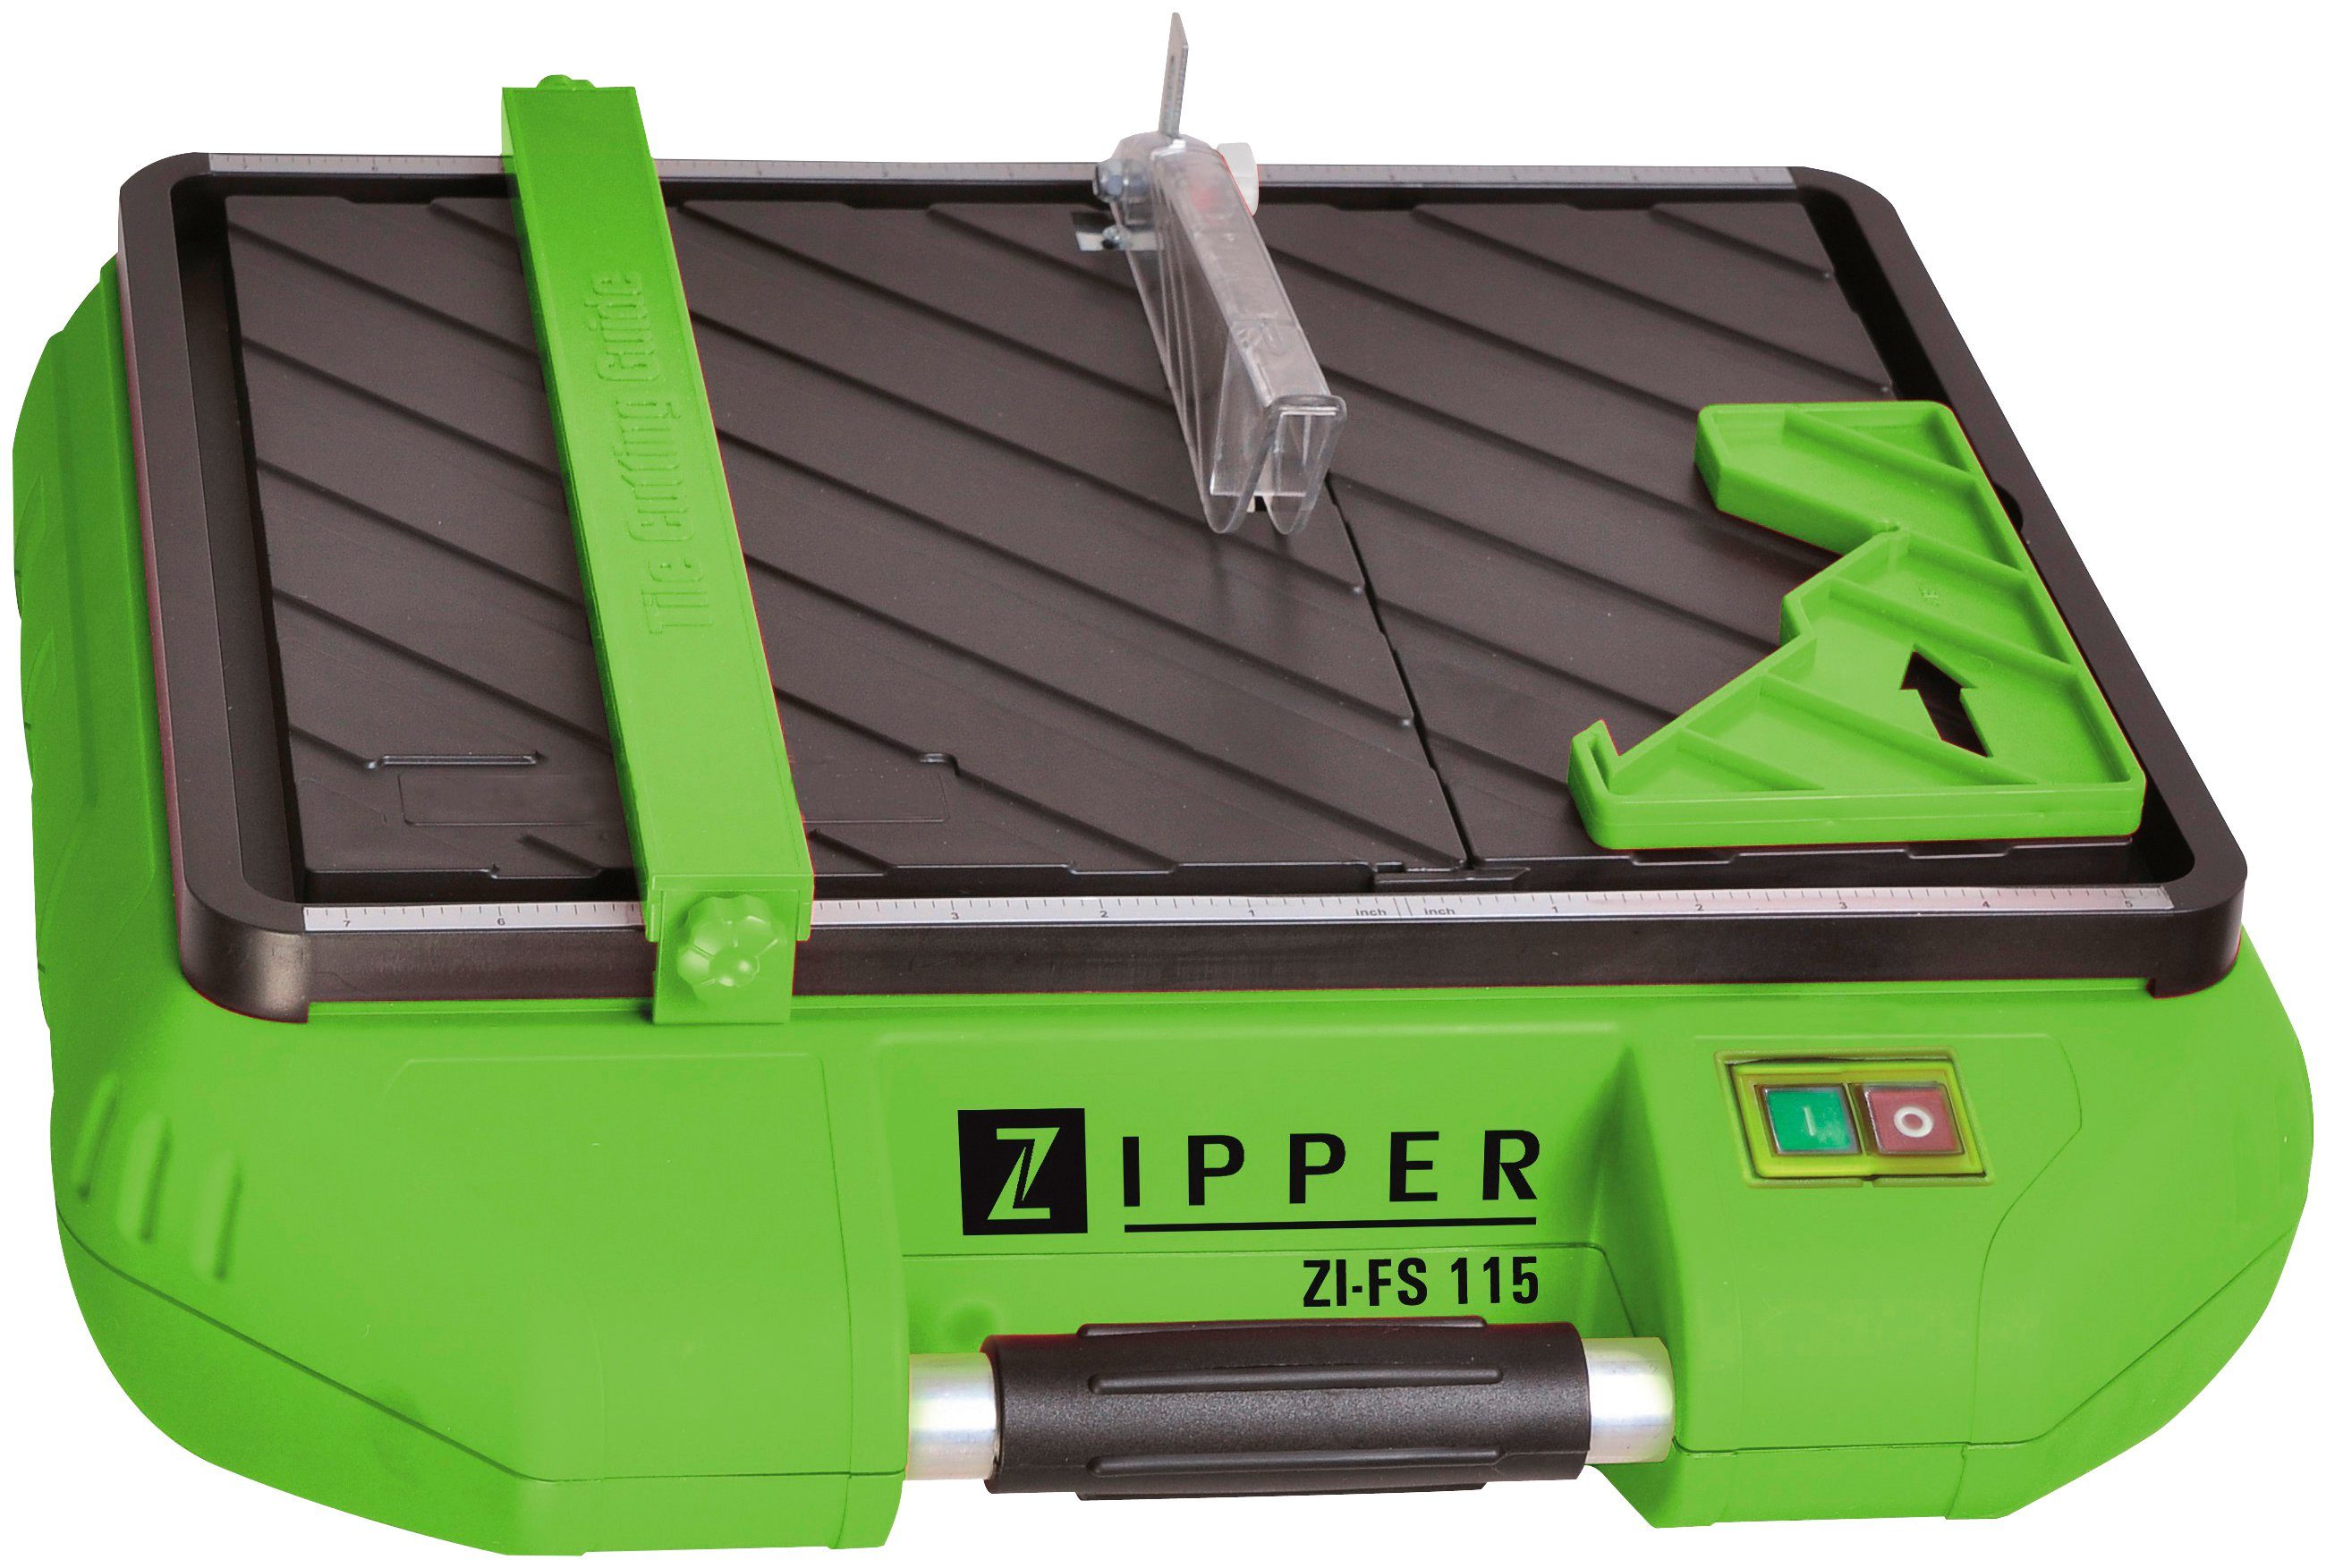 ZIPPER Fliesenschneidemaschine ZI-FS115, Zubehöraufbewahrun für rechte Aufklappbarer Seite Tisch